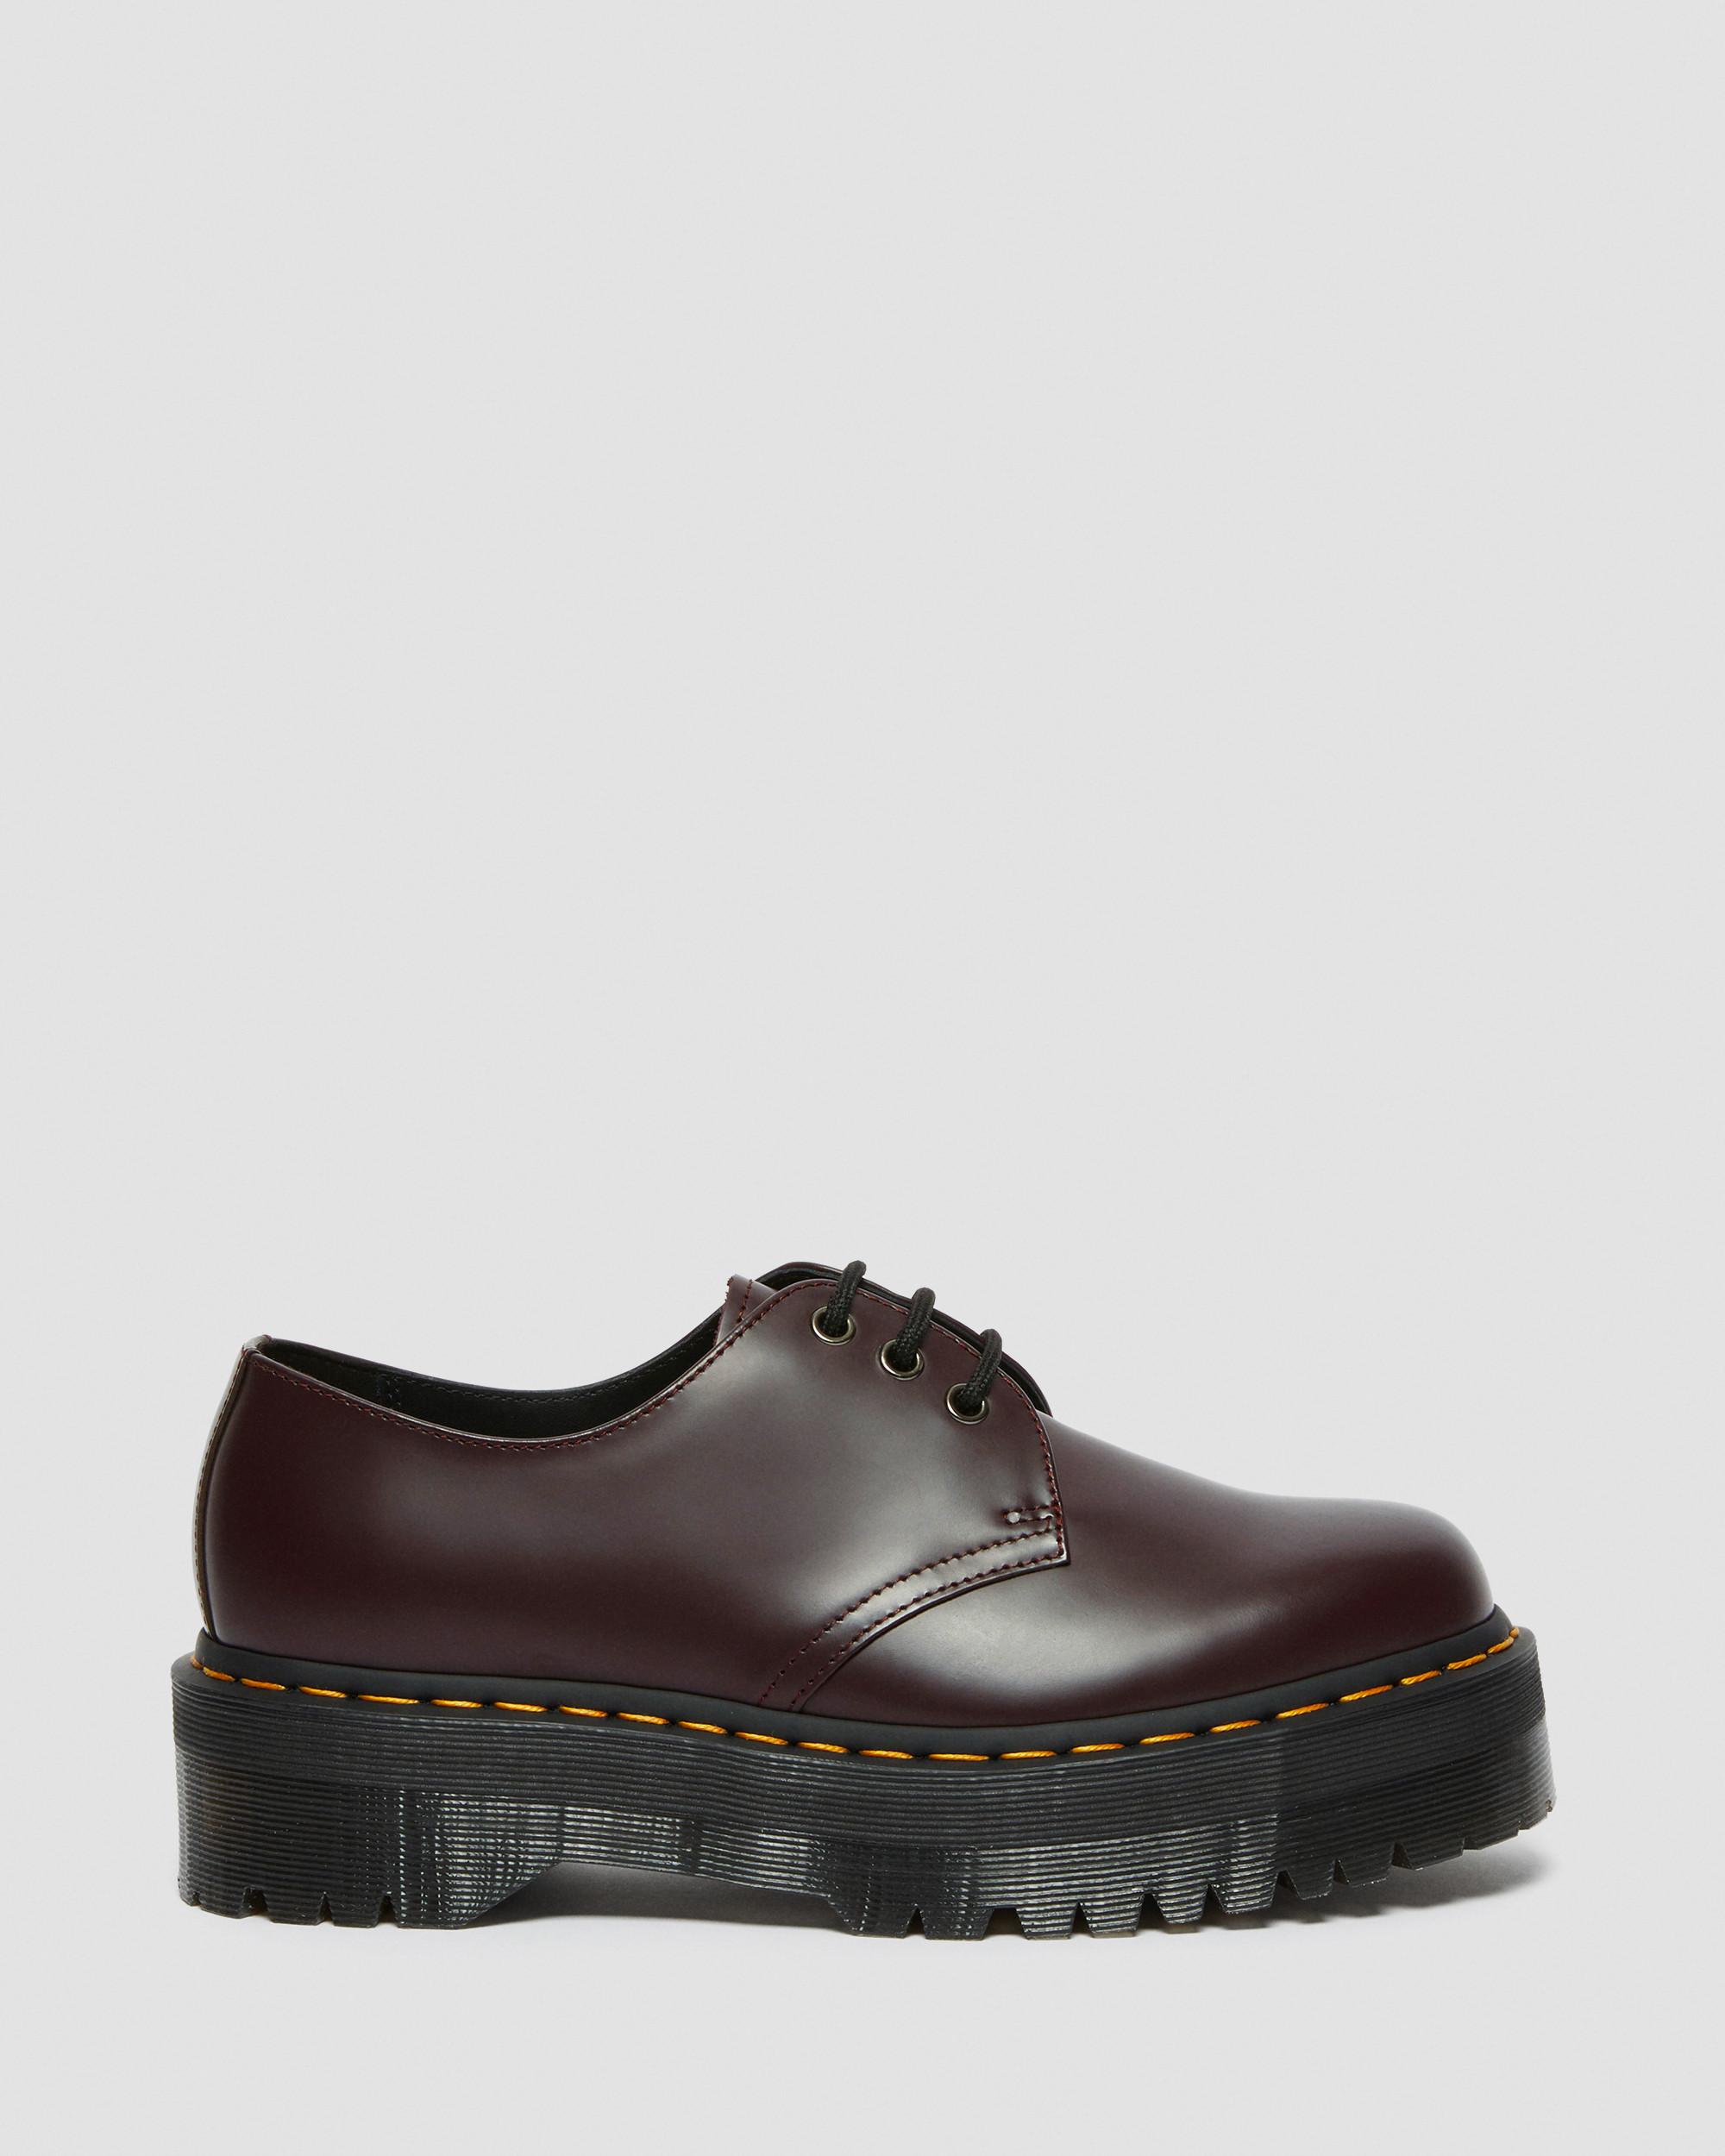 Dr Martens - 1461 Patent Leather Platform Oxford Shoes SKU number